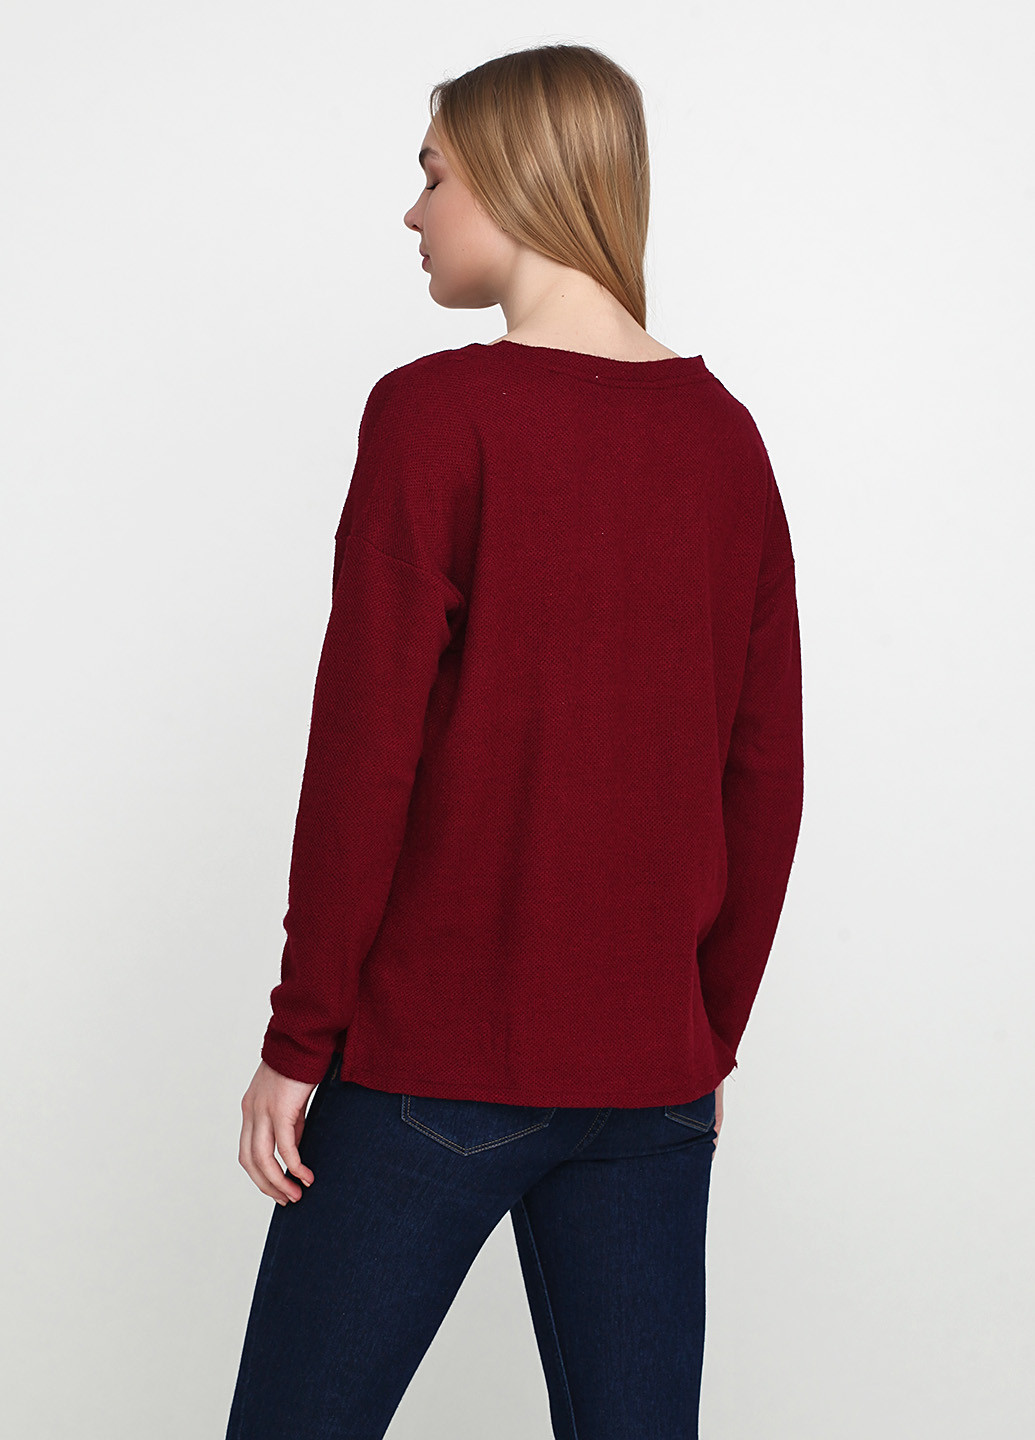 Бордовый демисезонный пуловер пуловер Springfield